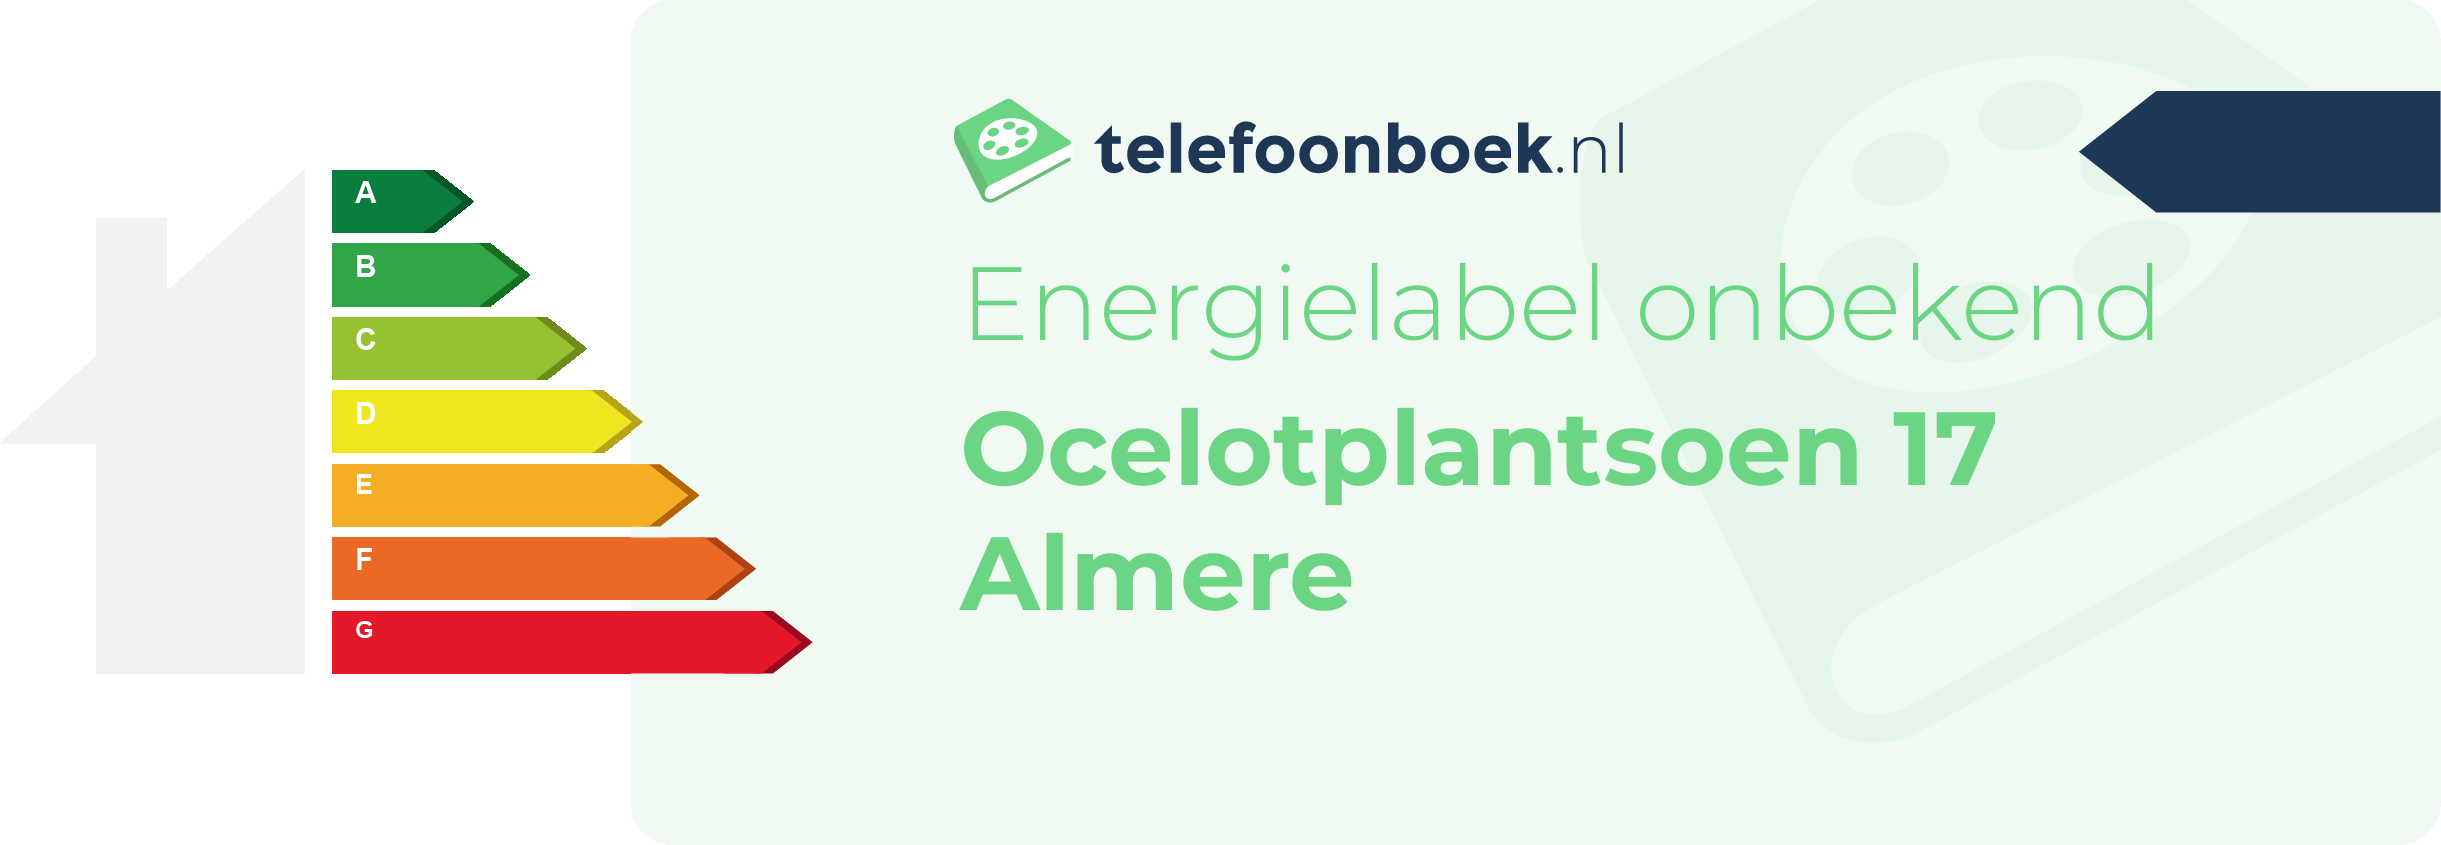 Energielabel Ocelotplantsoen 17 Almere